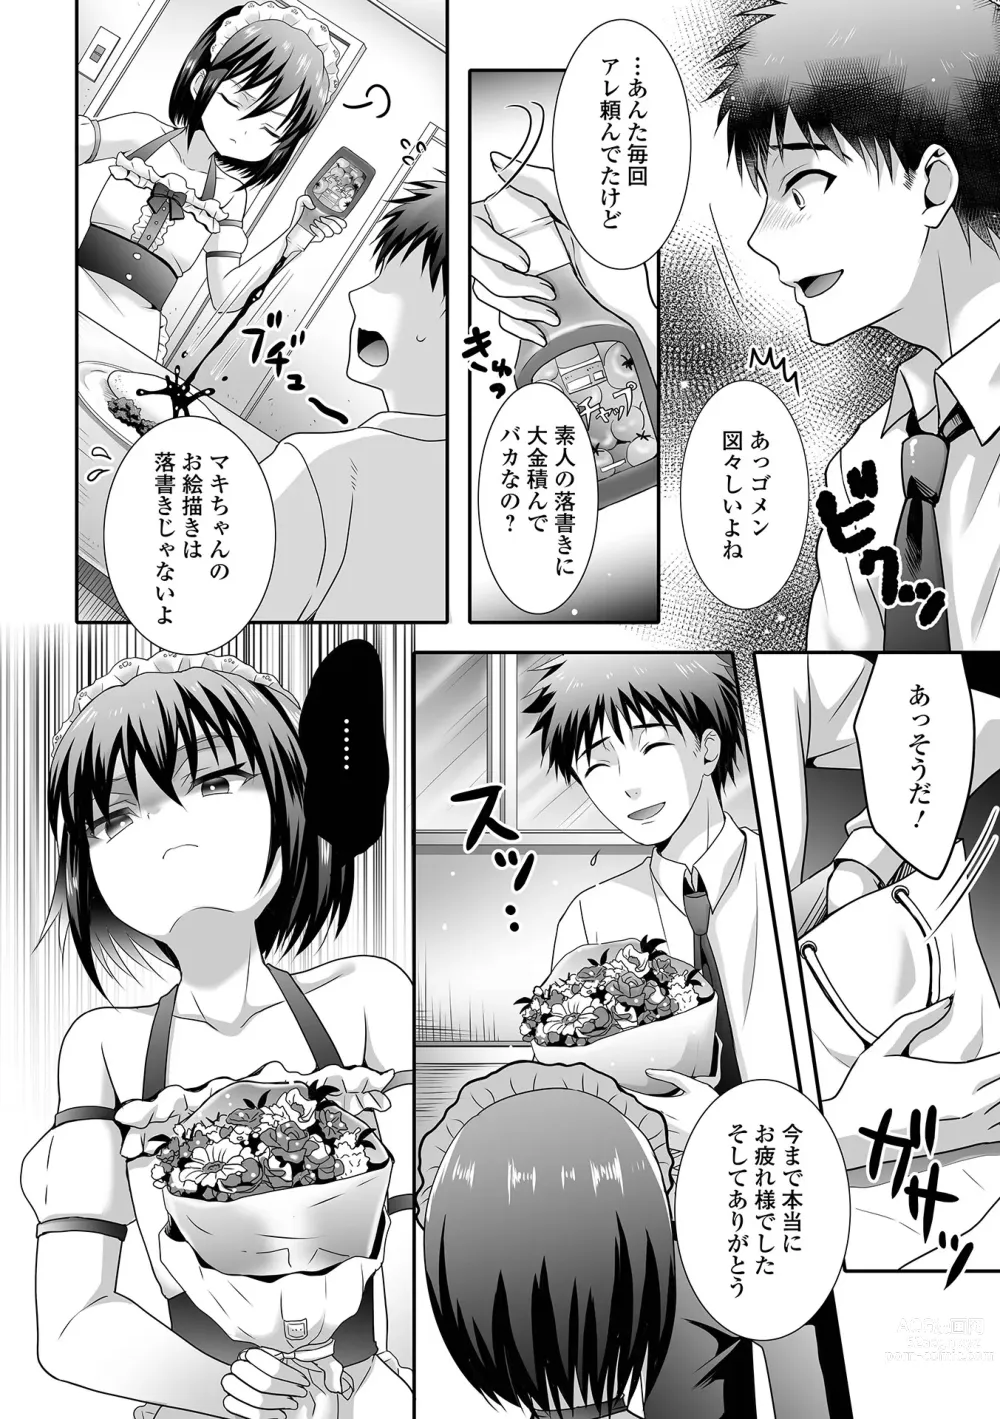 Page 22 of manga Gekkan Web Otoko no Ko-llection! S Vol. 89